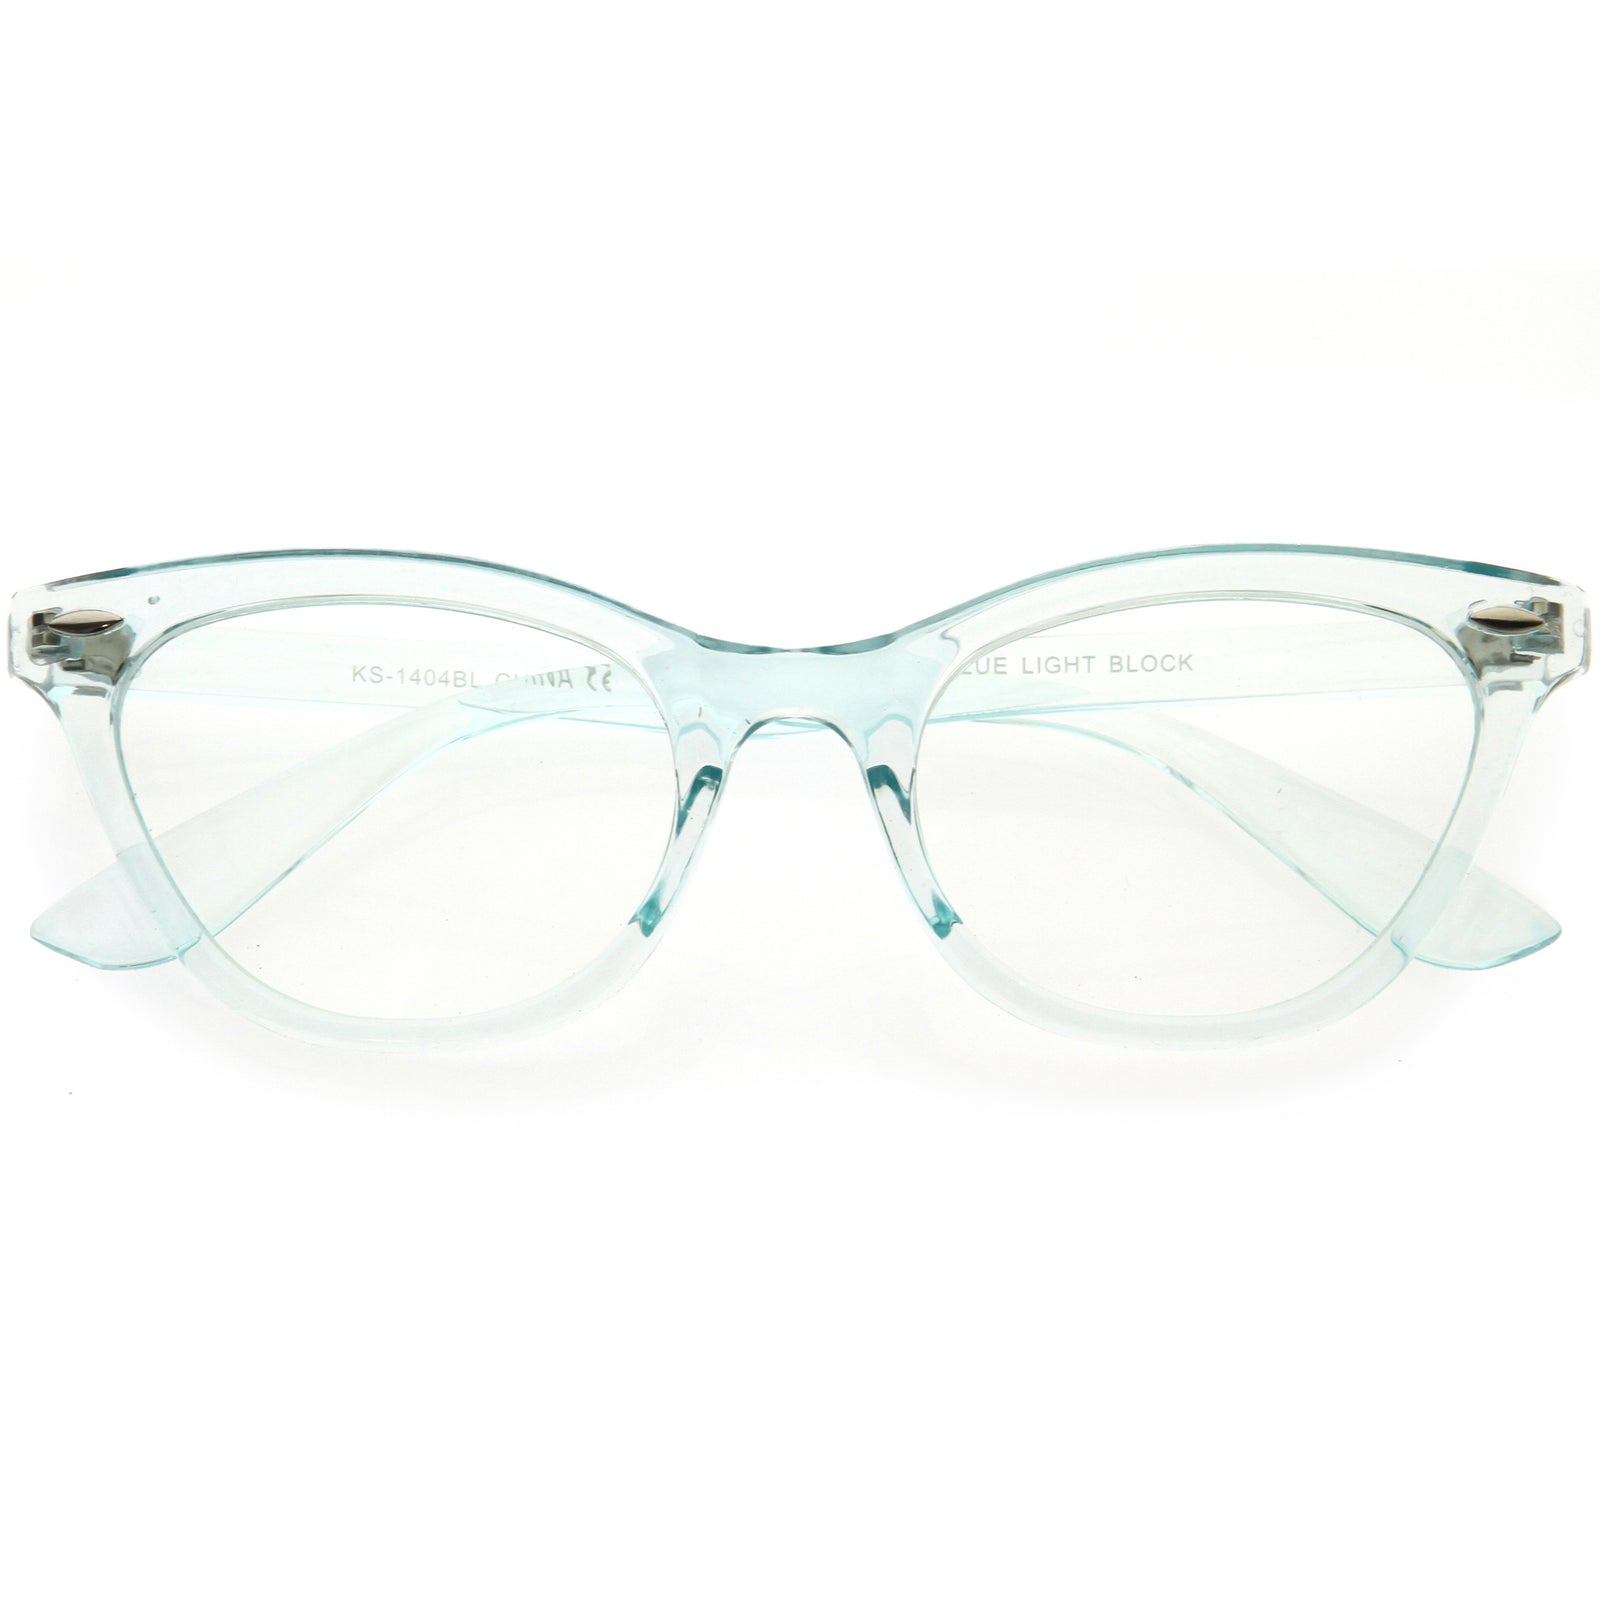 Hipster snakeskin luxury glasses flat light glasses Acetate frame